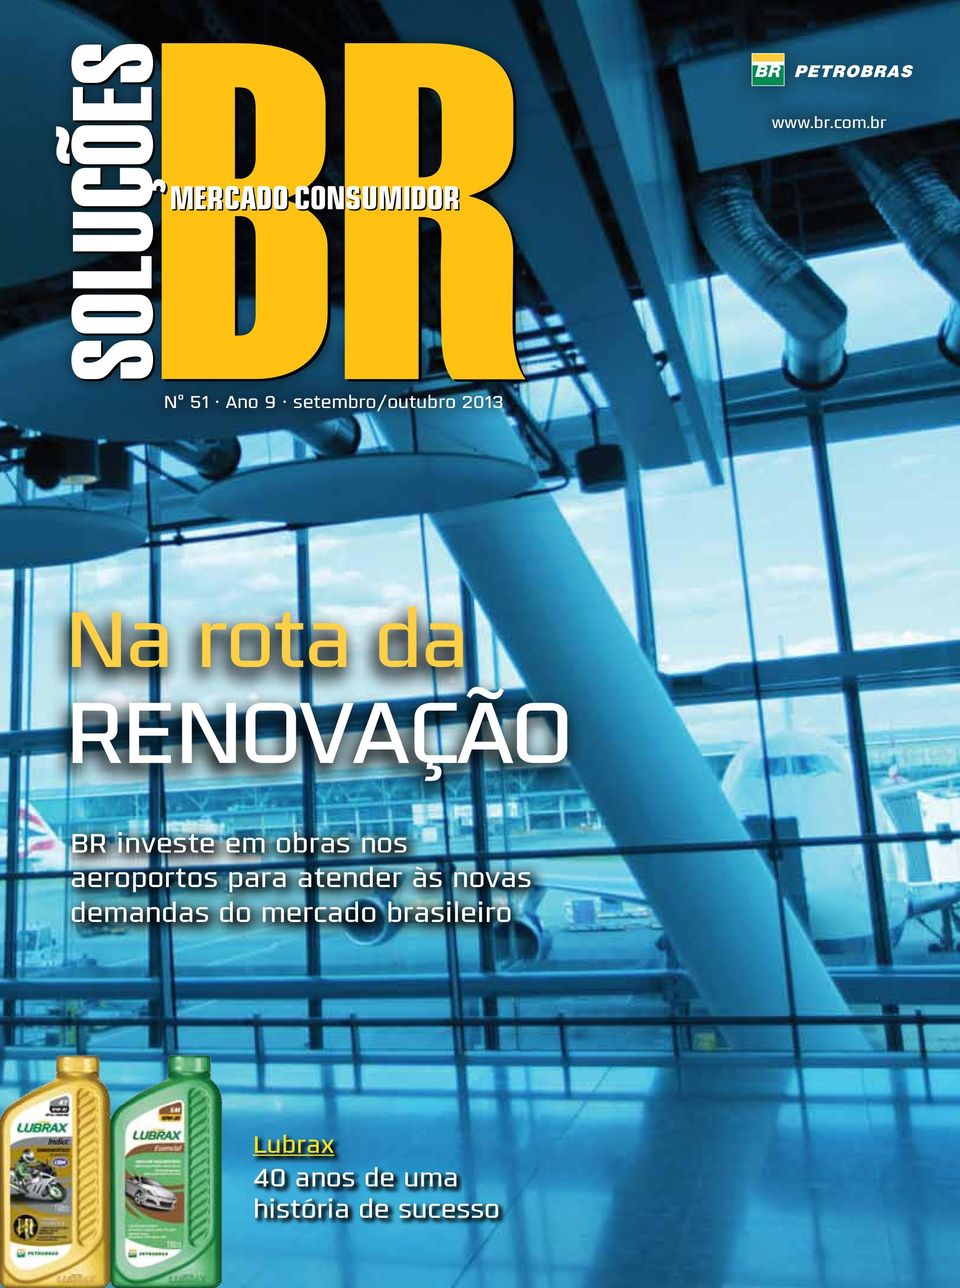 renovação BR investe em obras nos aeroportos para